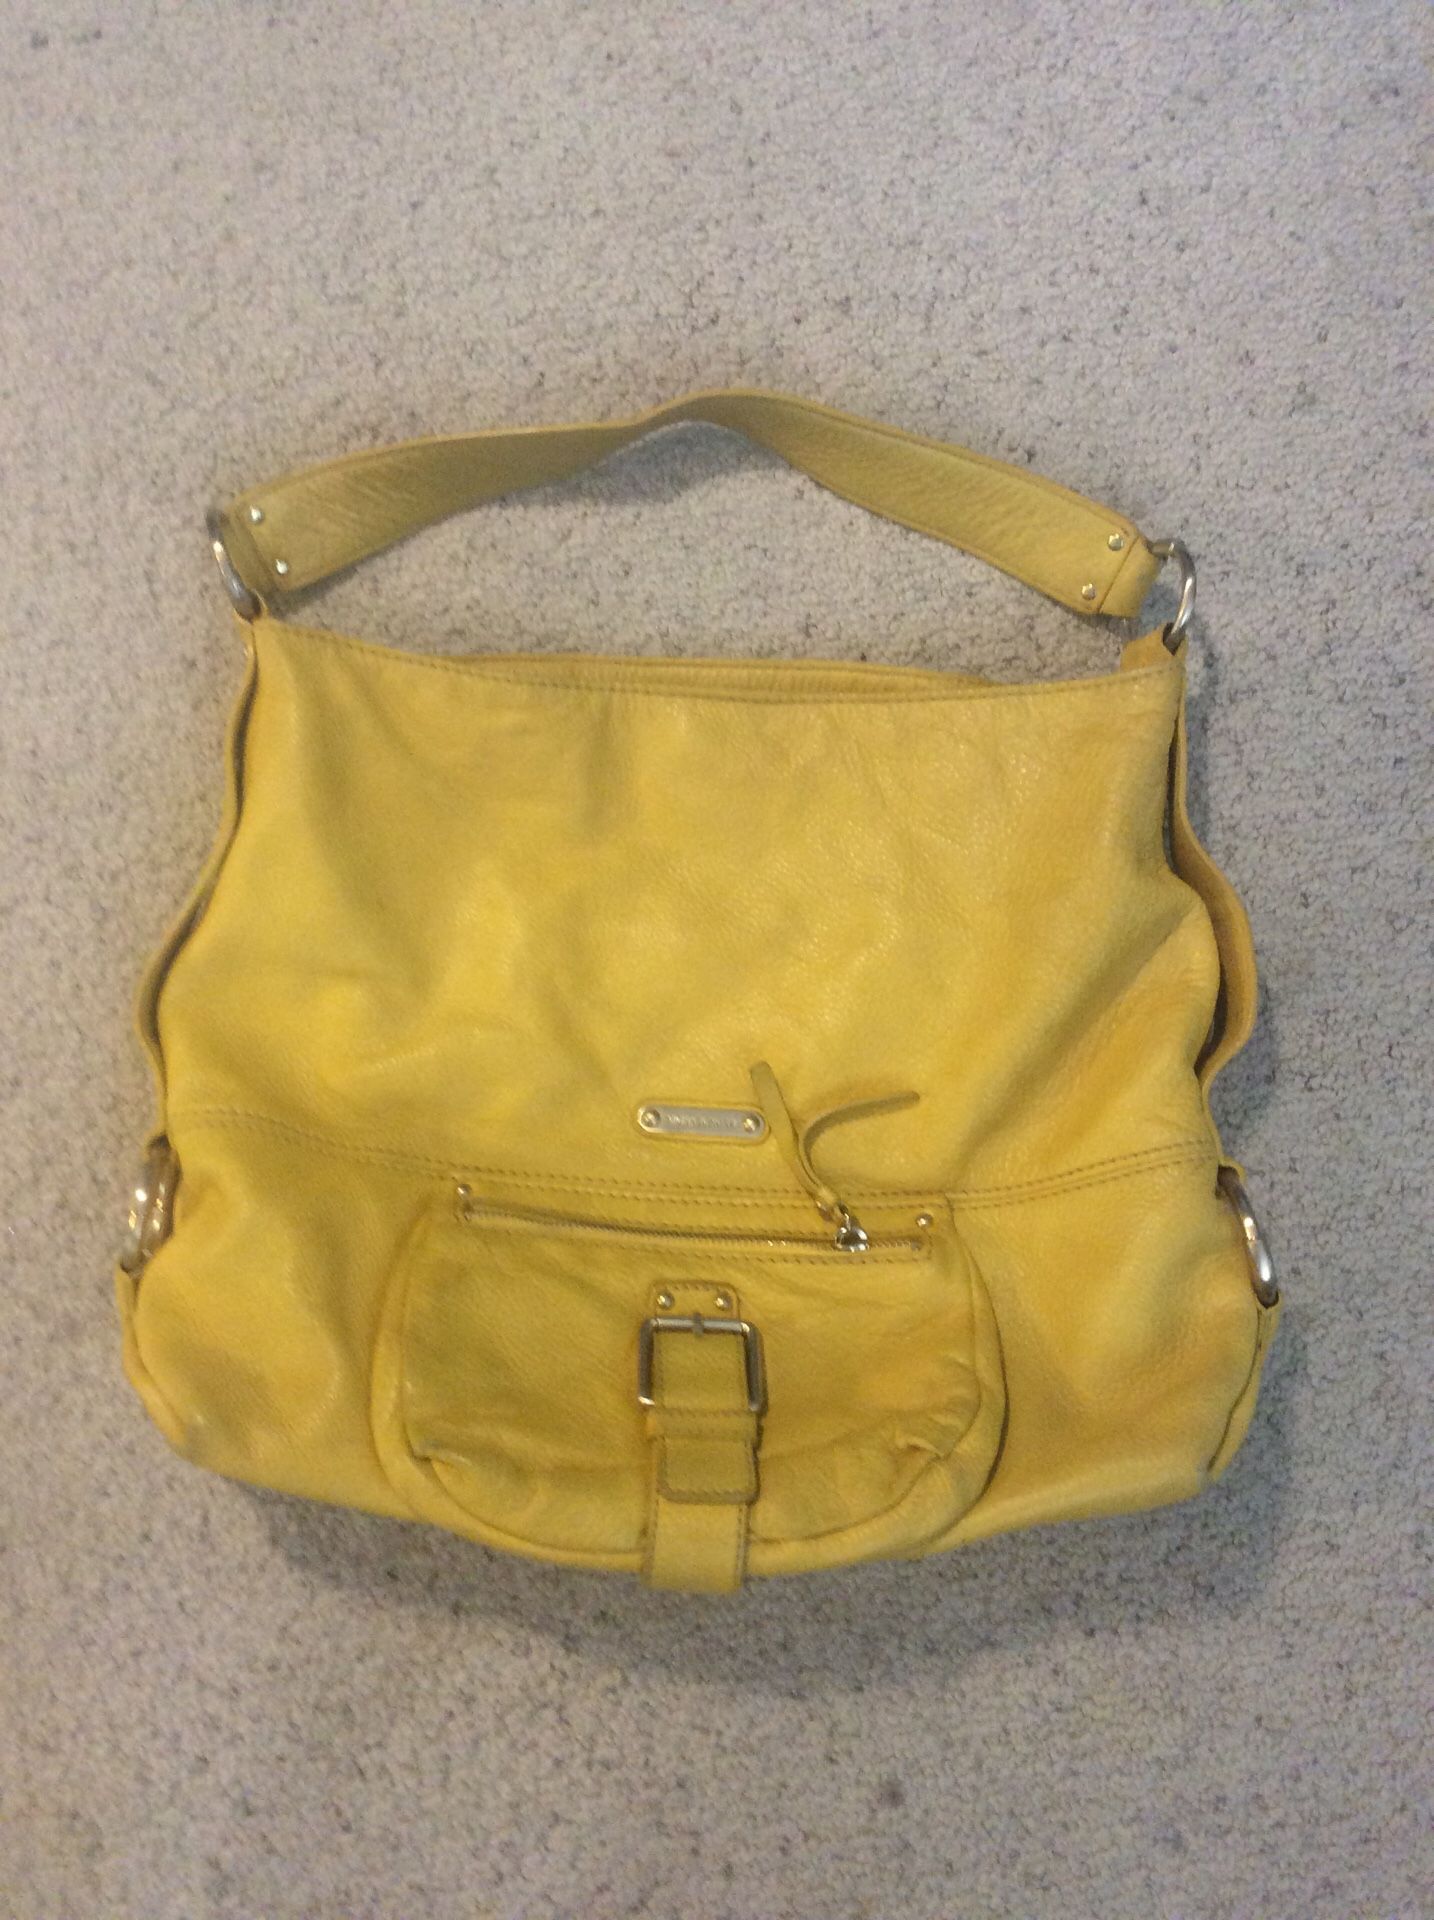 Michael Kors yellow handbag